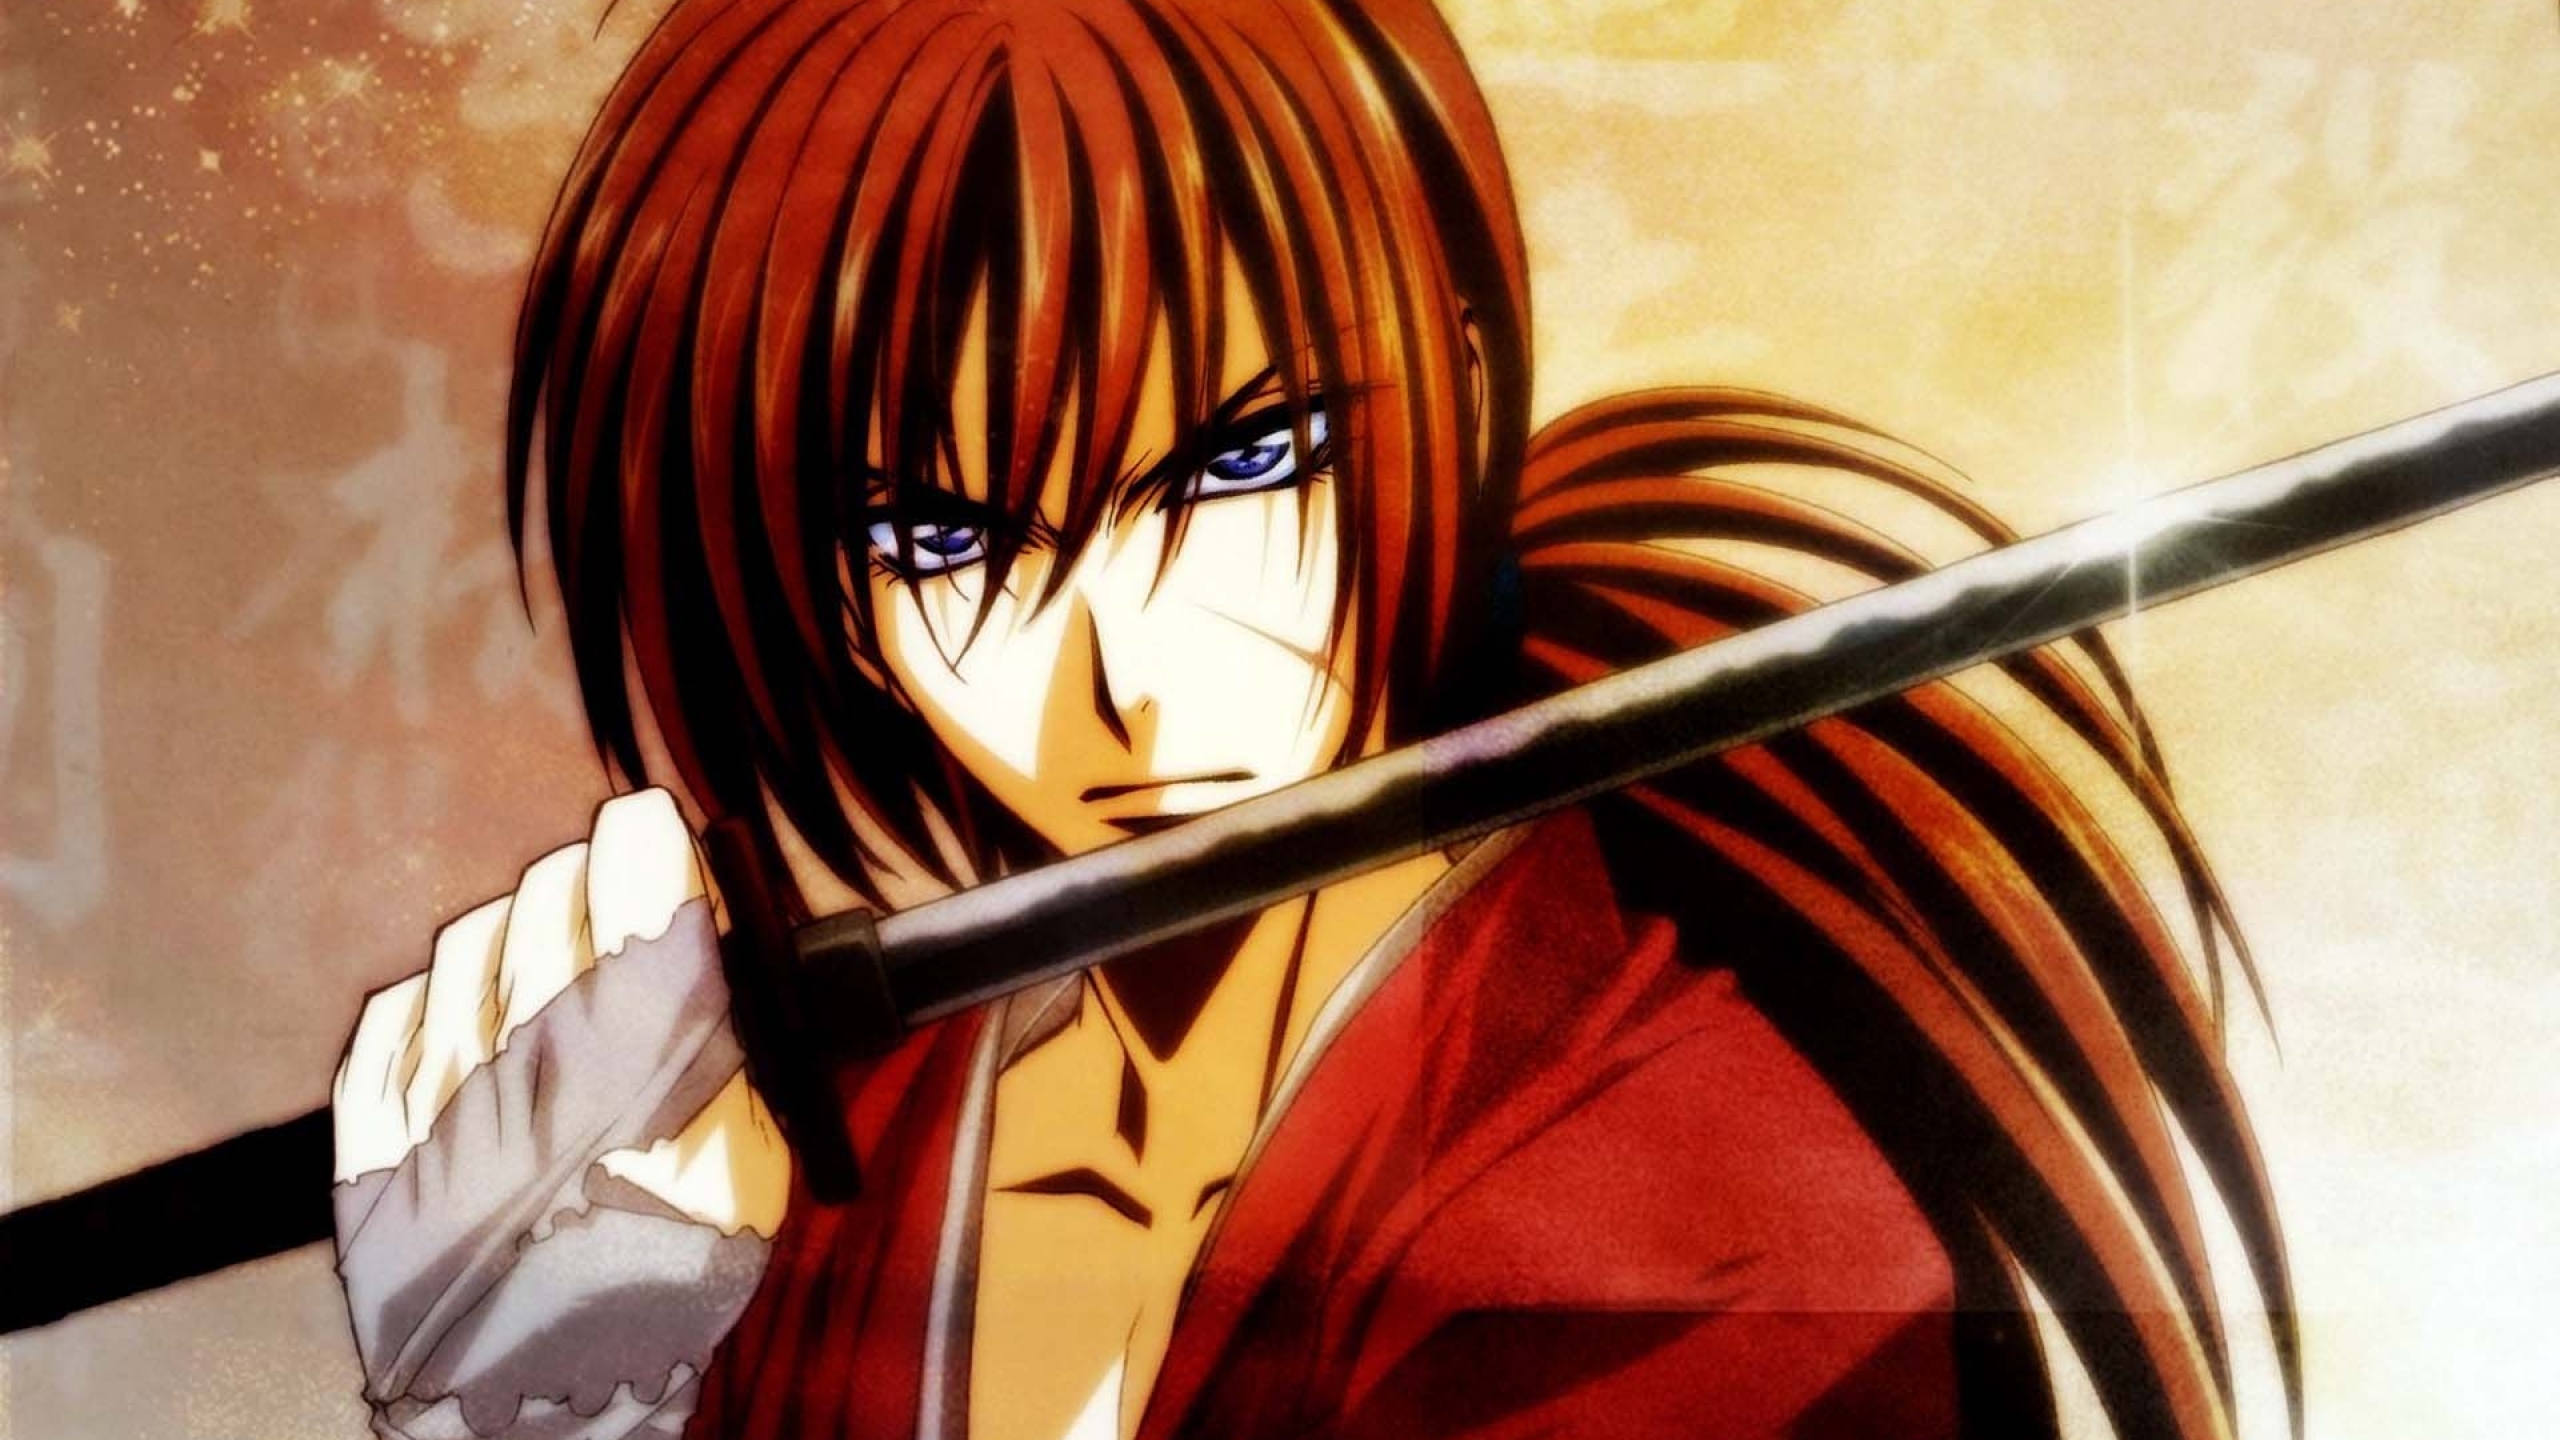 7. "Kenshin Himura" from Rurouni Kenshin - wide 6